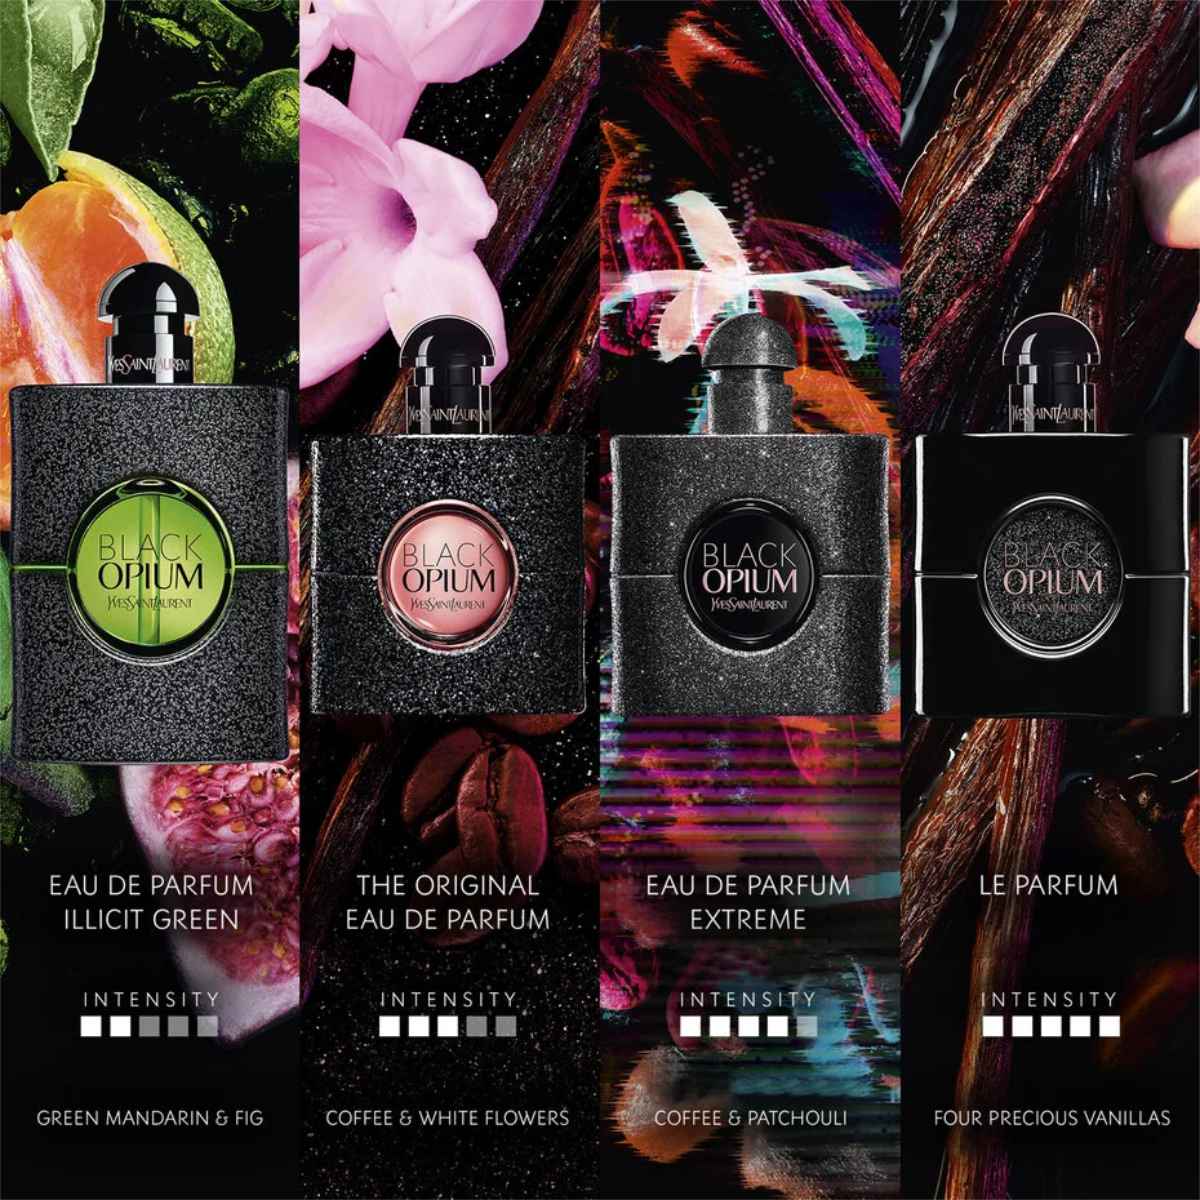 Black Opium Le Parfum - The New Fragrance By Yves Saint Laurent Beauté